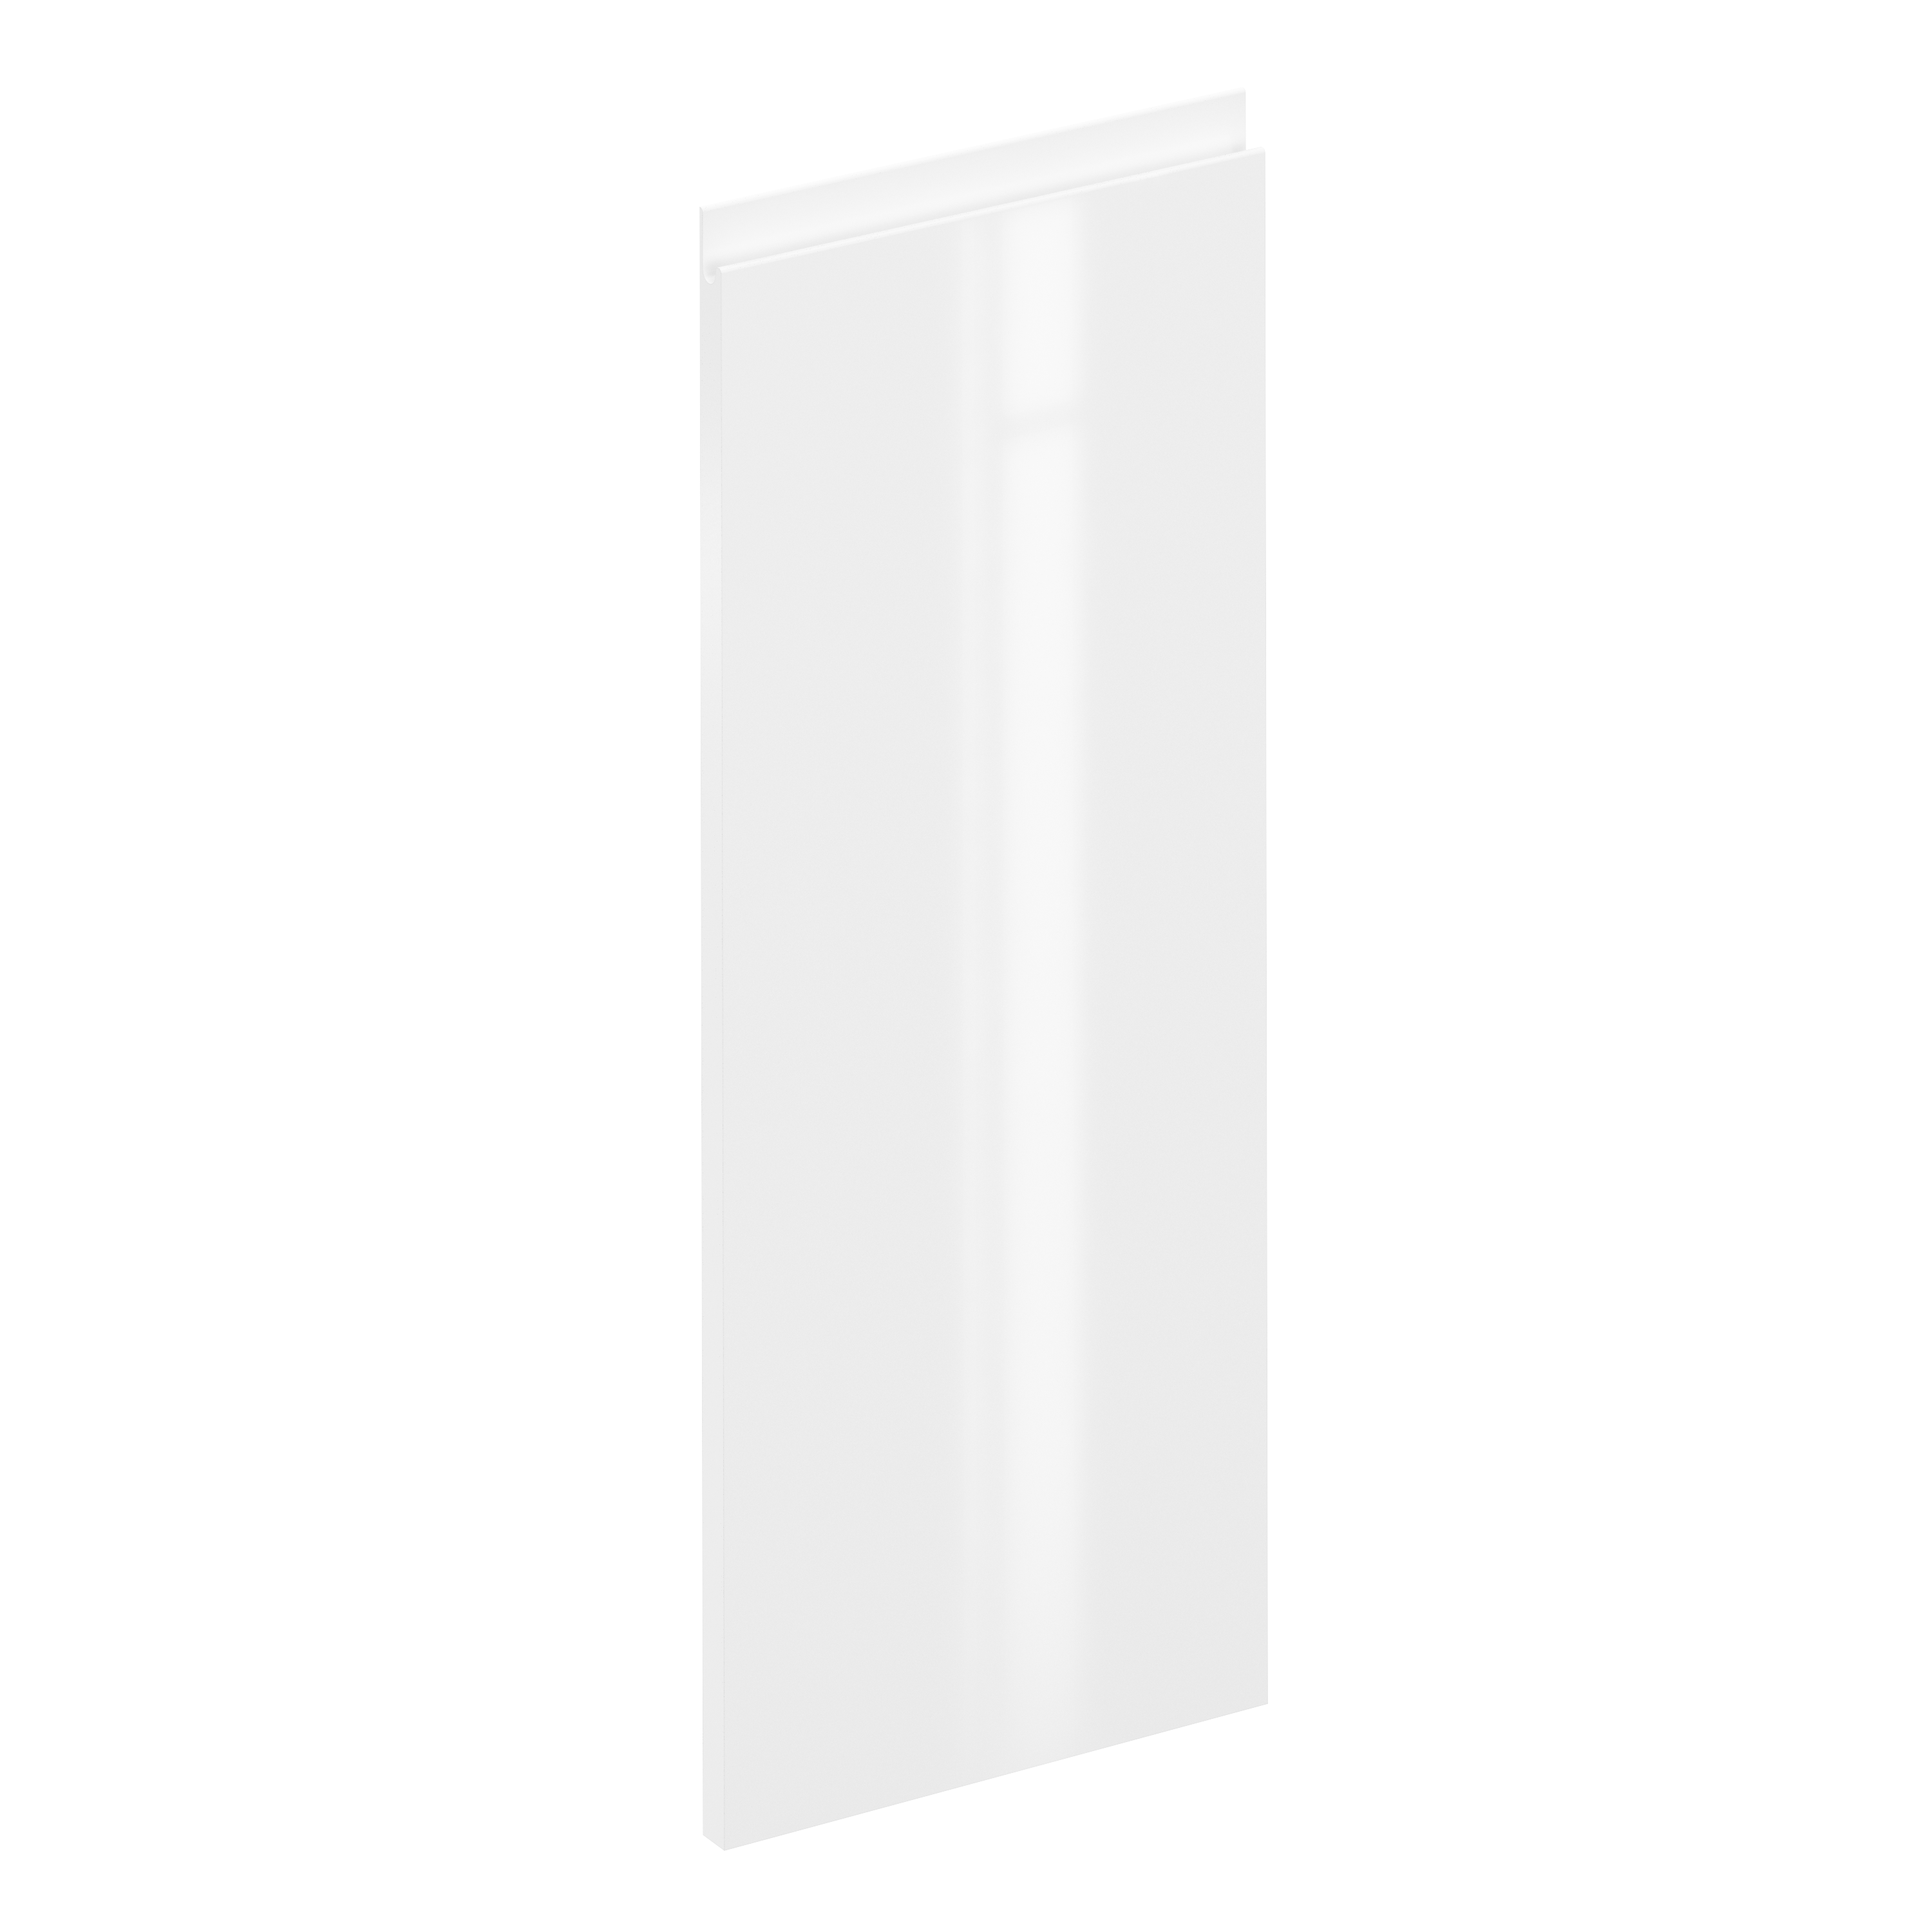 Puerta para mueble de cocina tokyo blanco brillo h 102.4 x l 40 cm